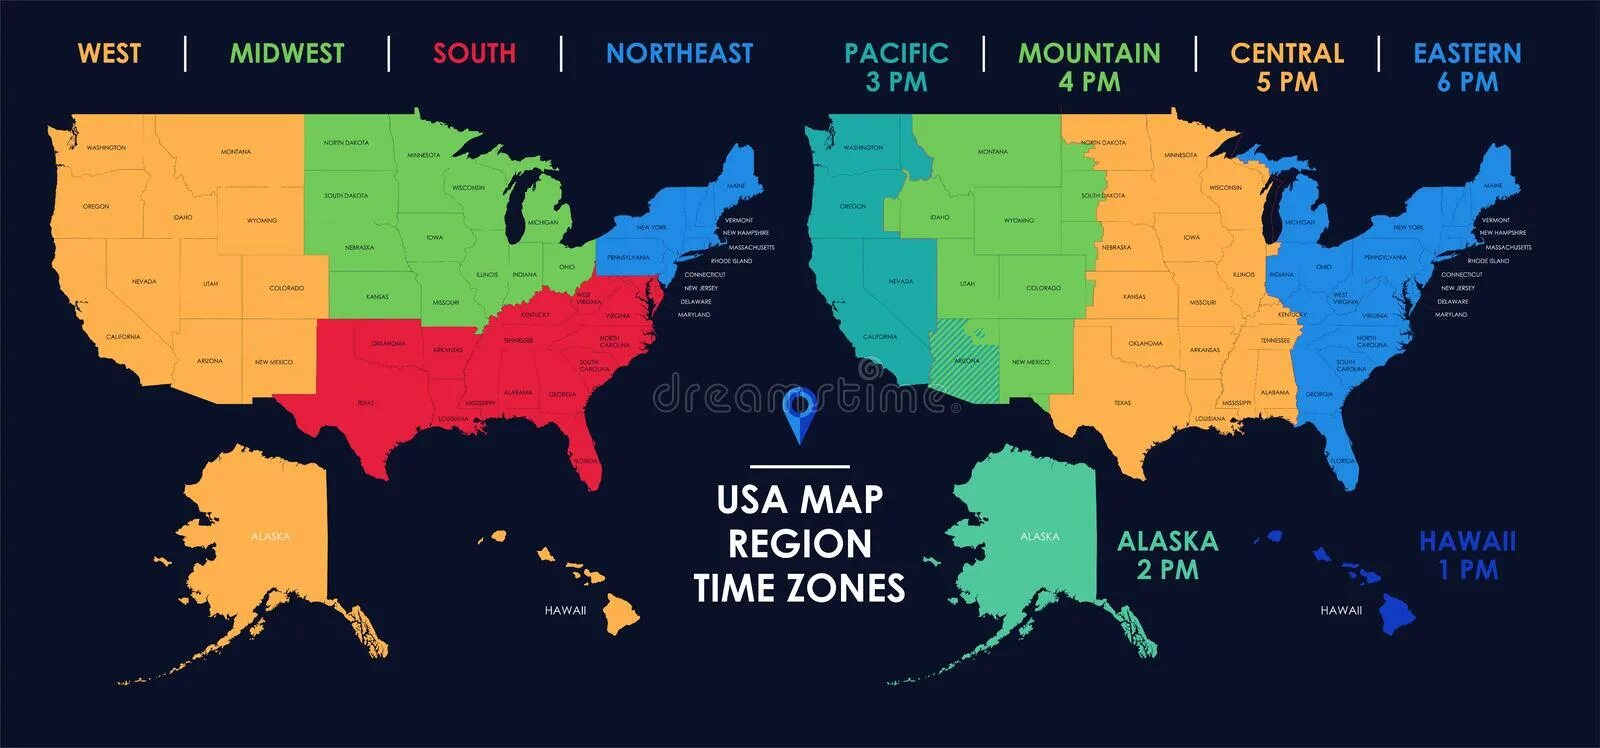 Region time. Карта США. Часовые пояса Америки на карте. Территория США. Климат в Америке по Штатам.